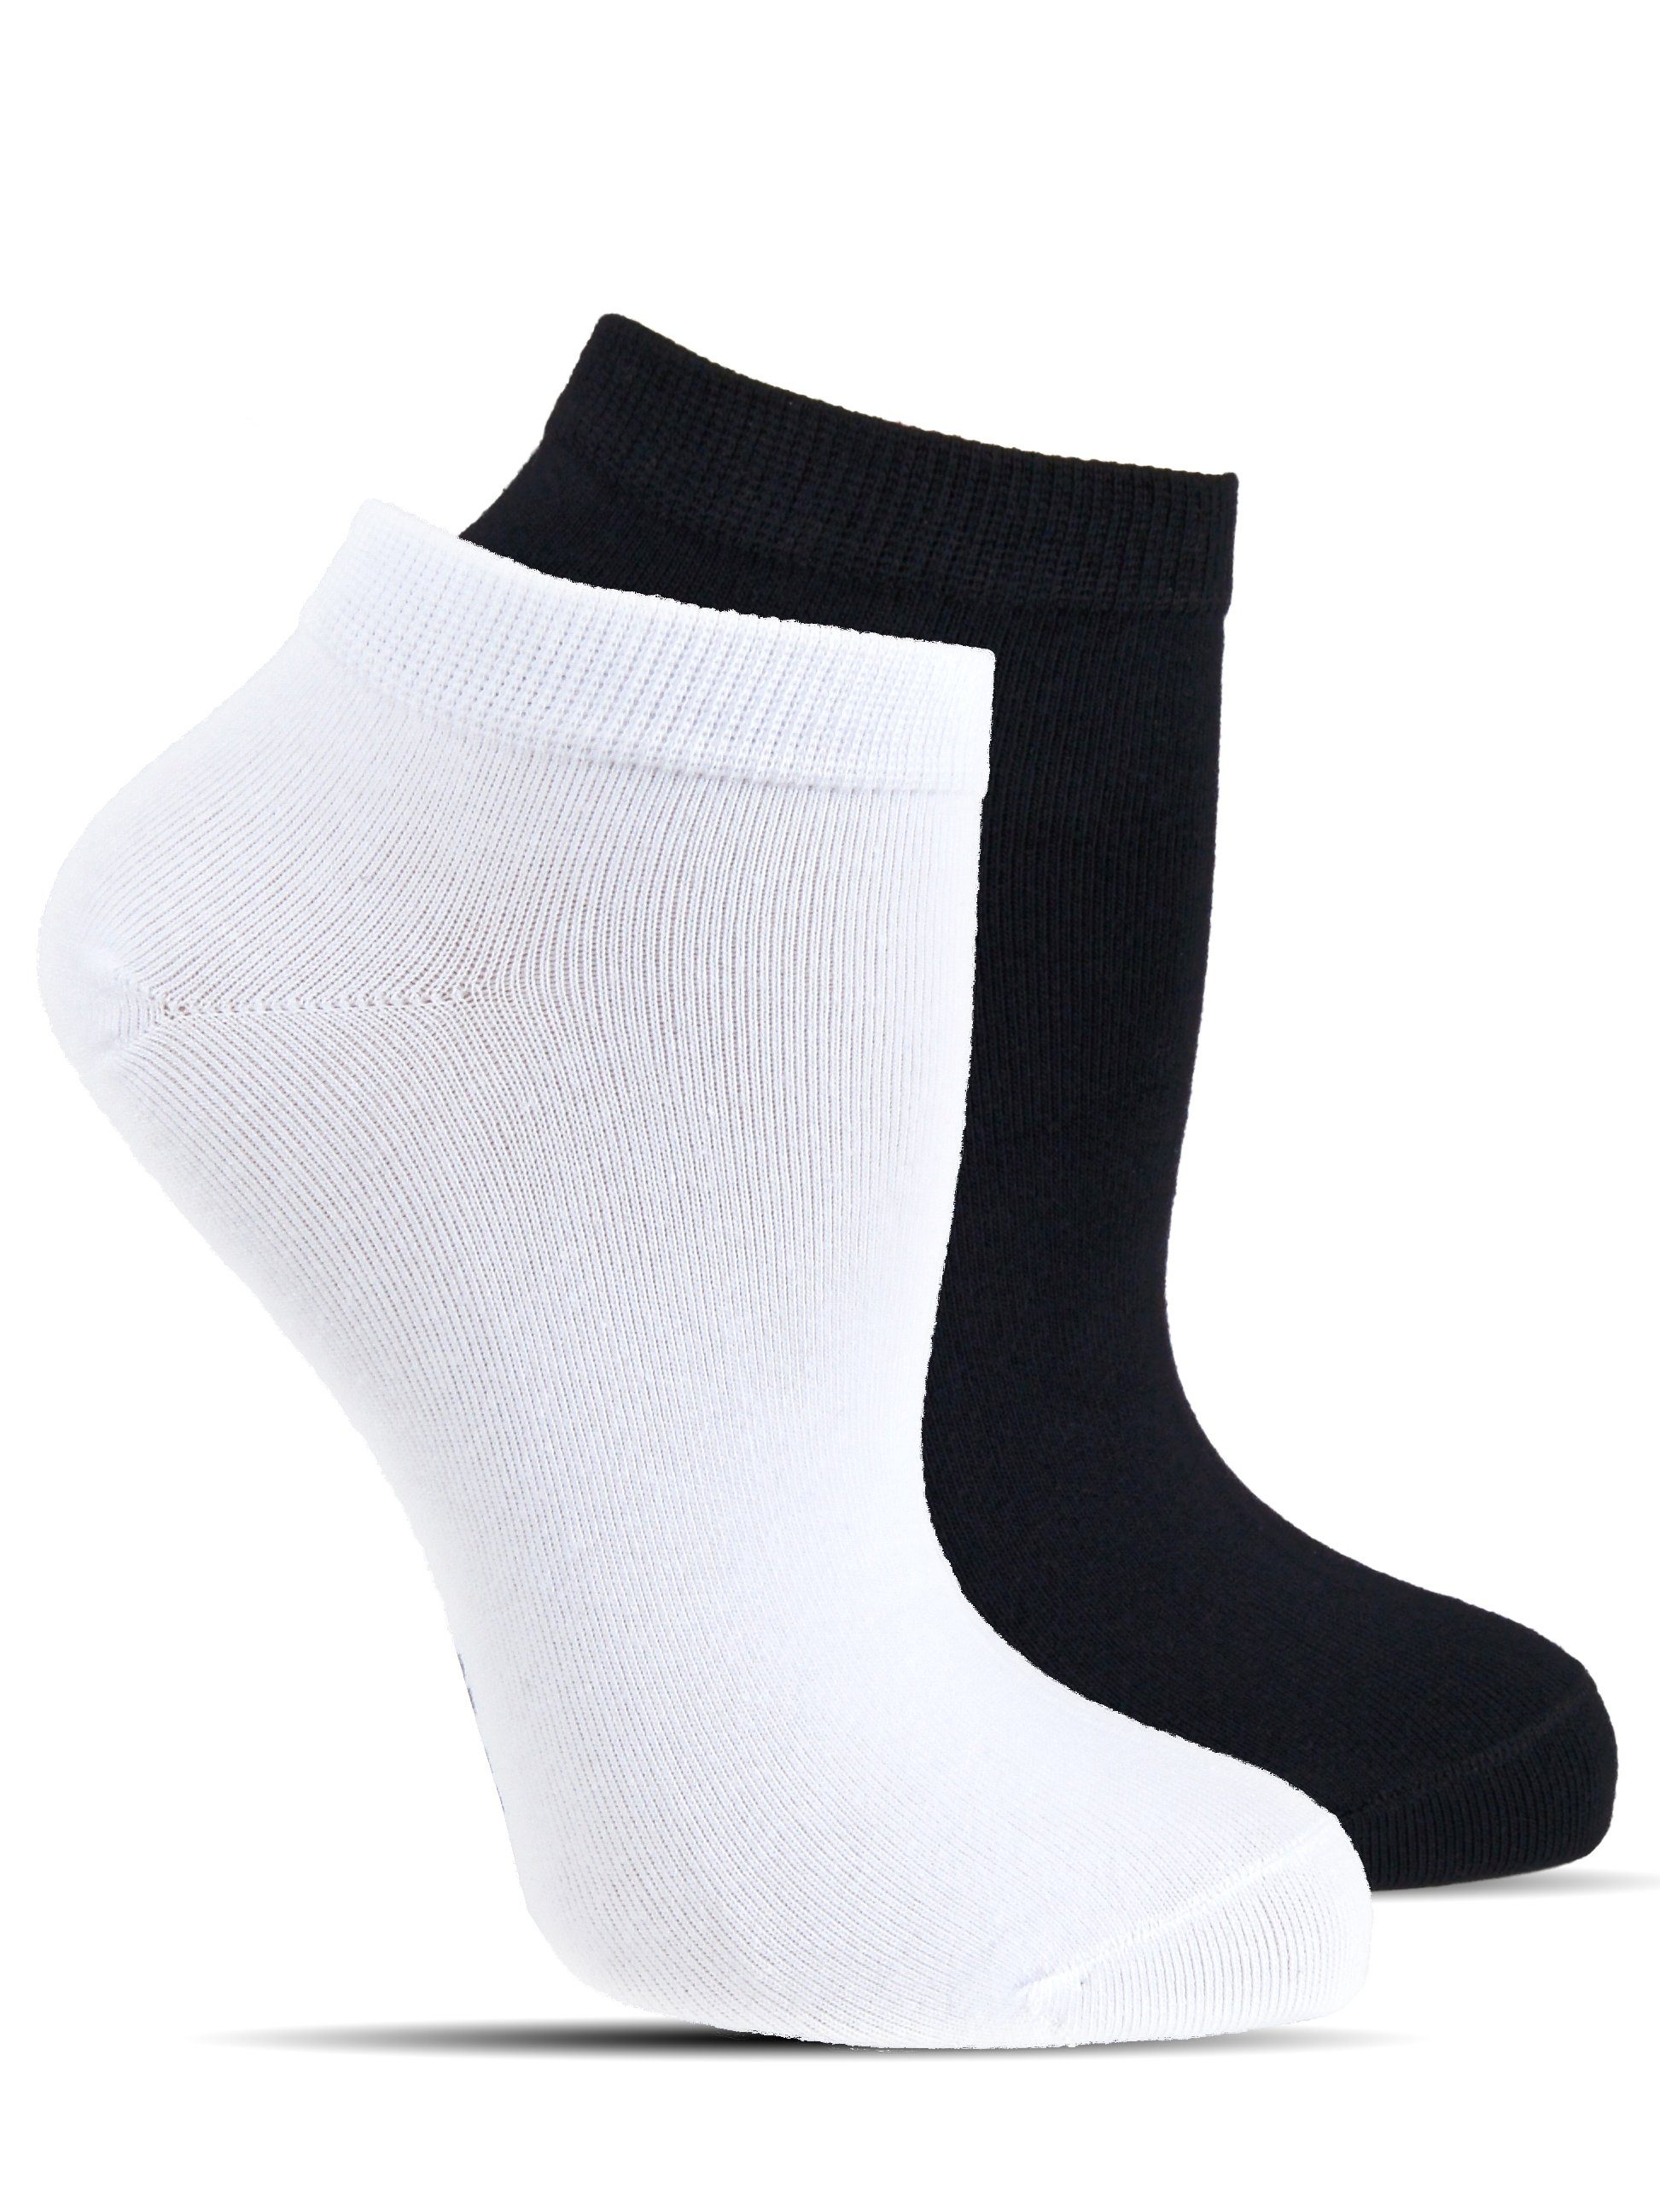 8 oder 12 Paar PREMIUM Sneaker Socken Damen & Herren Schwarz Weiß oder Beige 